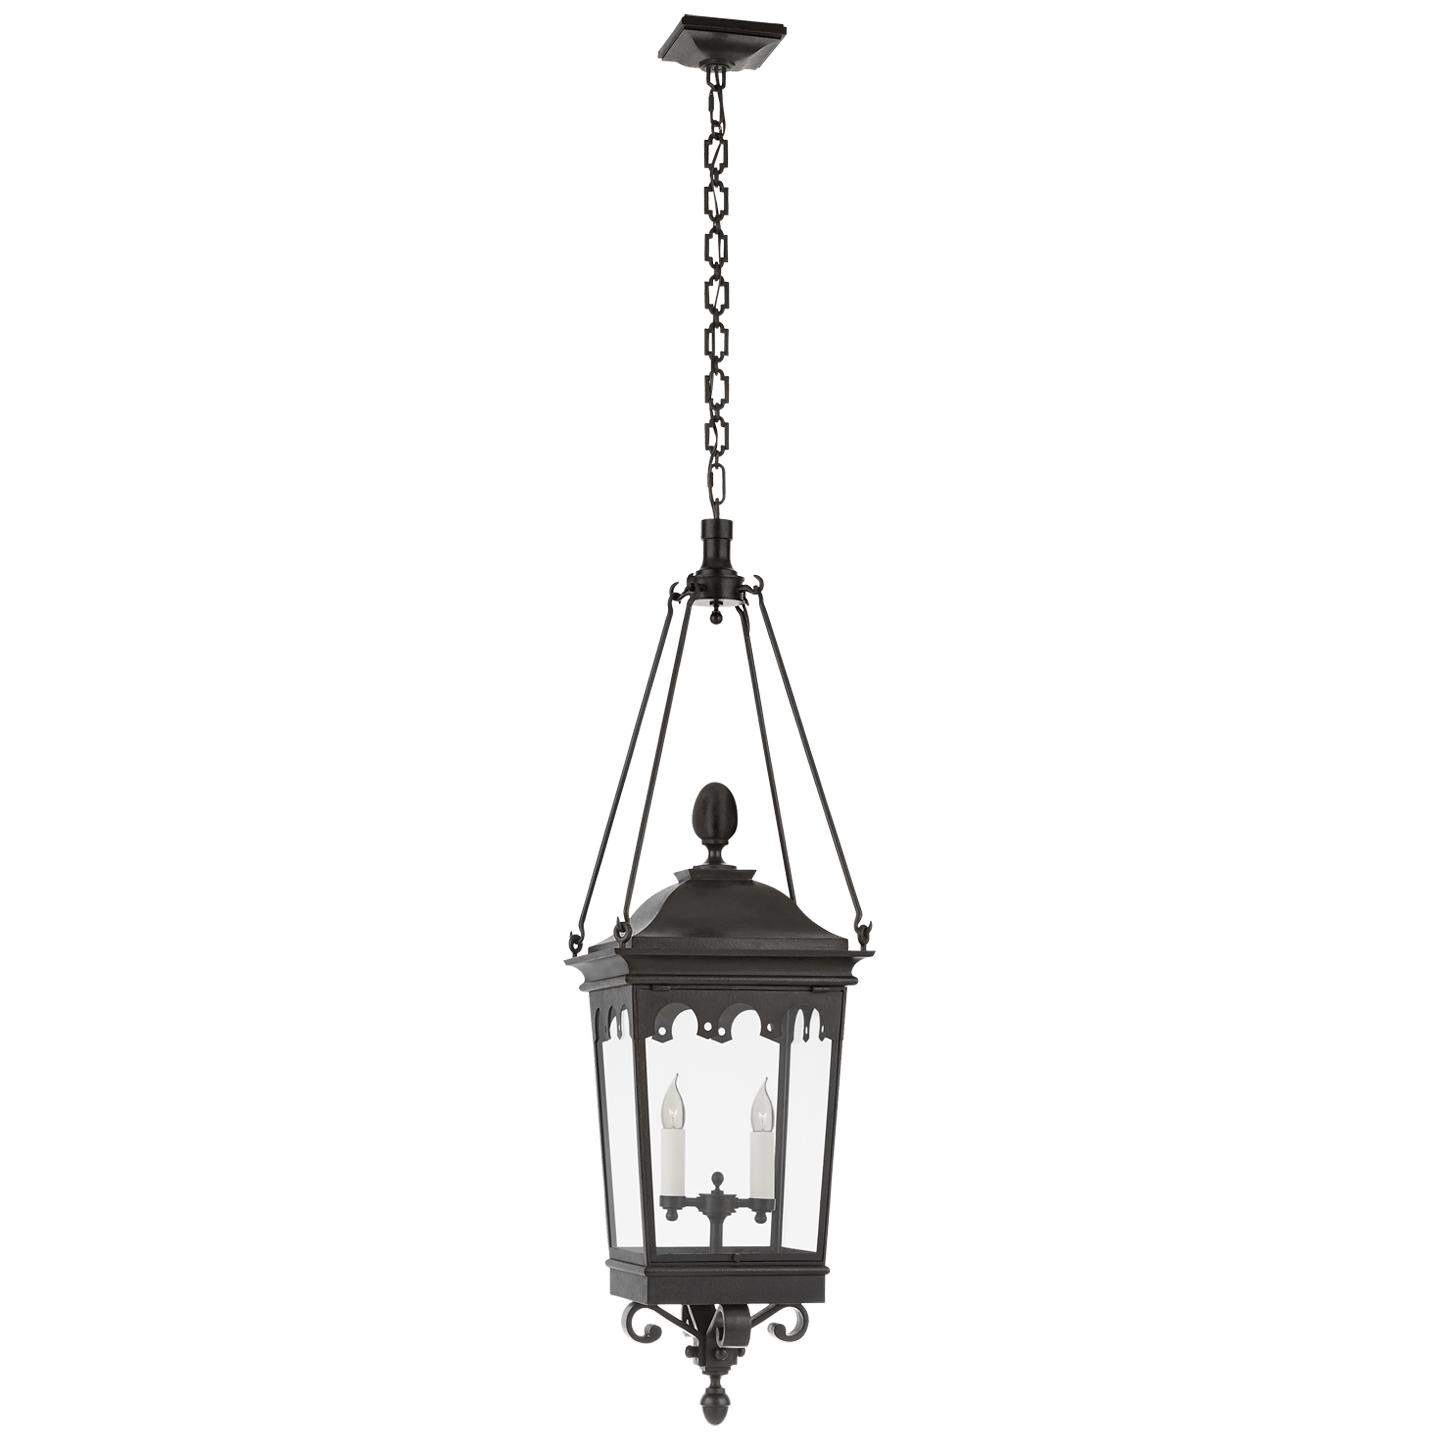 Купить Подвесной светильник Rosedale Grand Medium Hanging Lantern в интернет-магазине roooms.ru